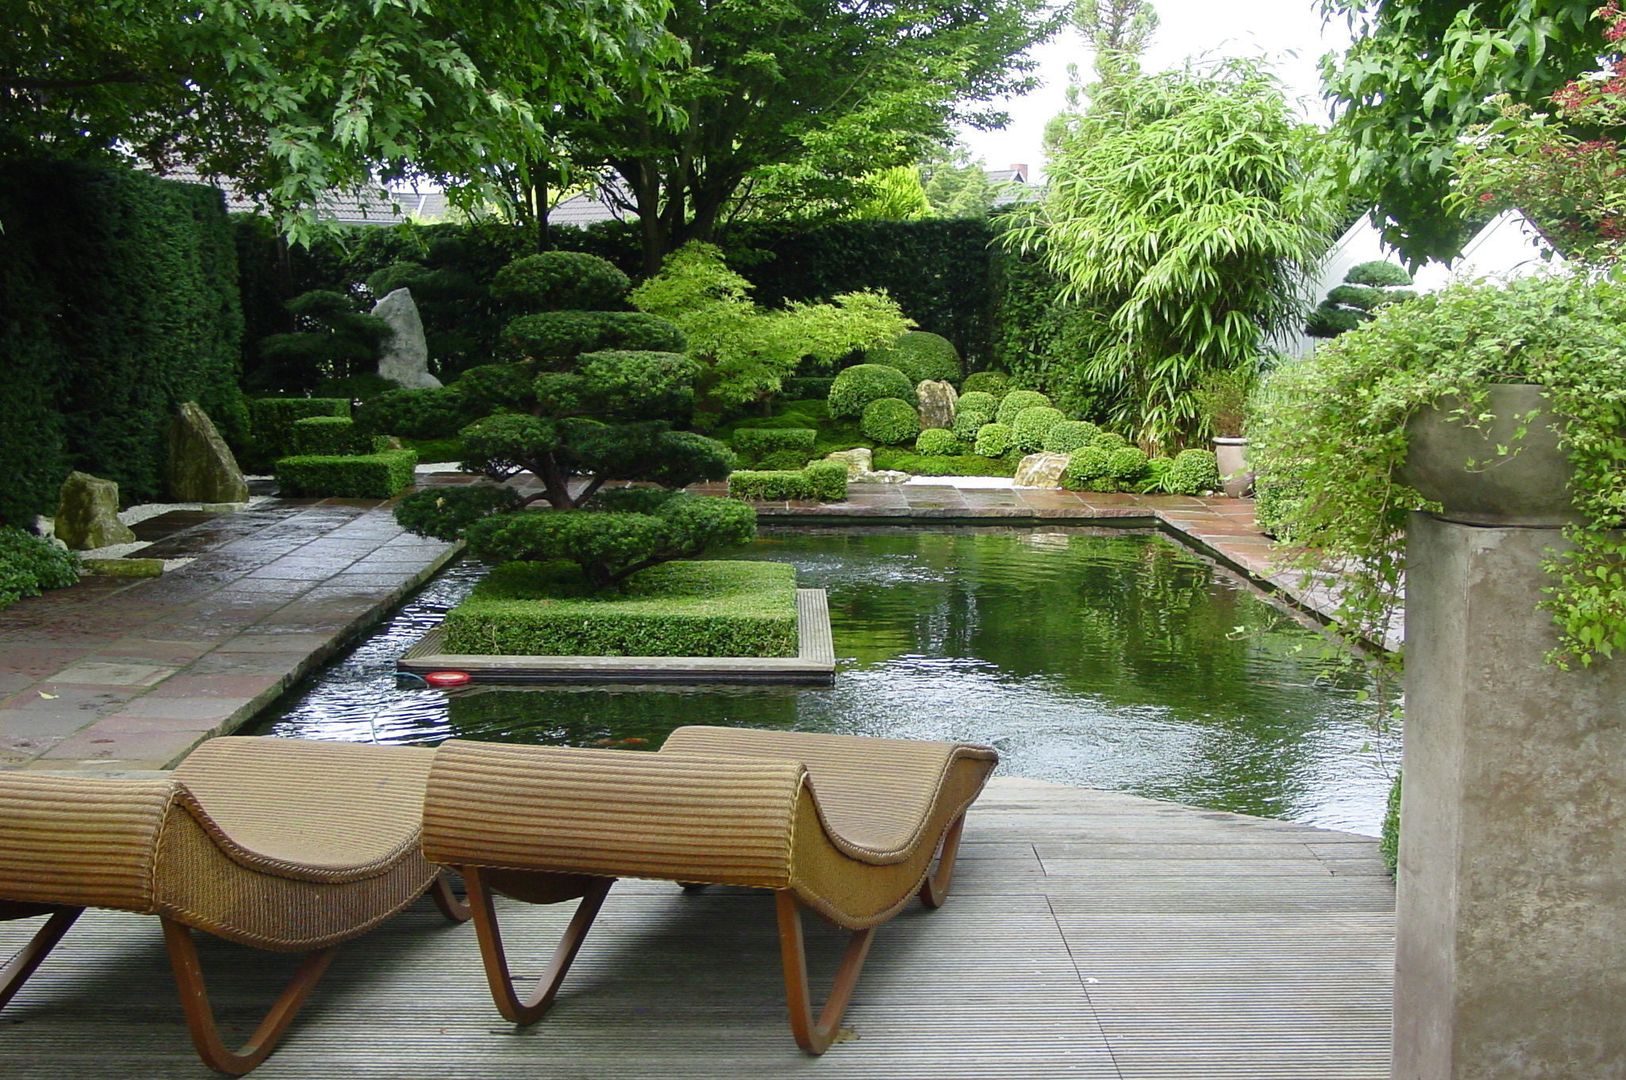 Gartengestaltung unter Anwendung der japanischen Gartenkunst japan-garten-kultur Ausgefallener Garten Wasser,Pflanze,Eigentum,Natur,Natürliche Landschaft,Baum,Botanik,Gartenmöbel,Holz,Gras